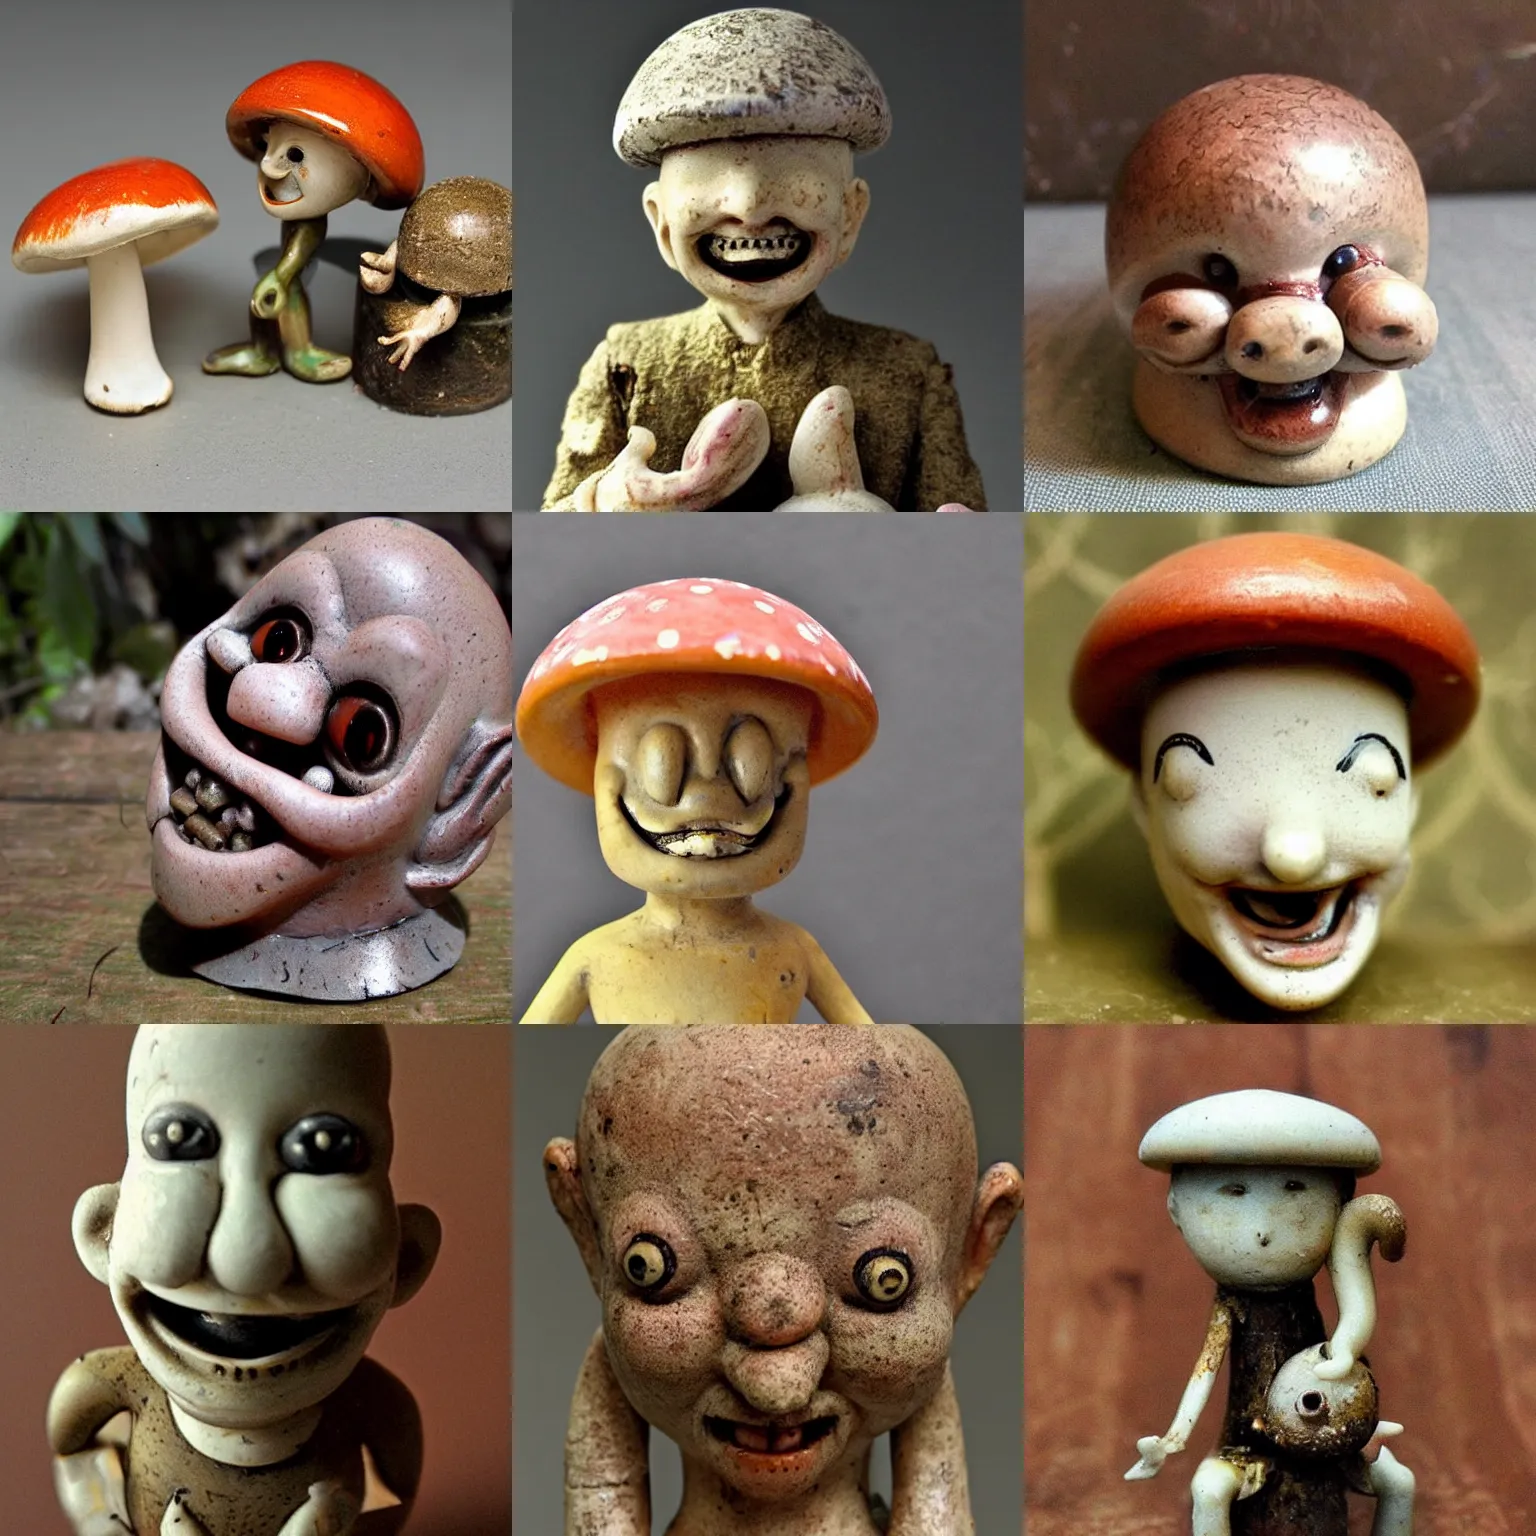 Prompt: anthropomorphic smiling! antique! mushroom!!! figurine, cursed disturbing creepy macro photo